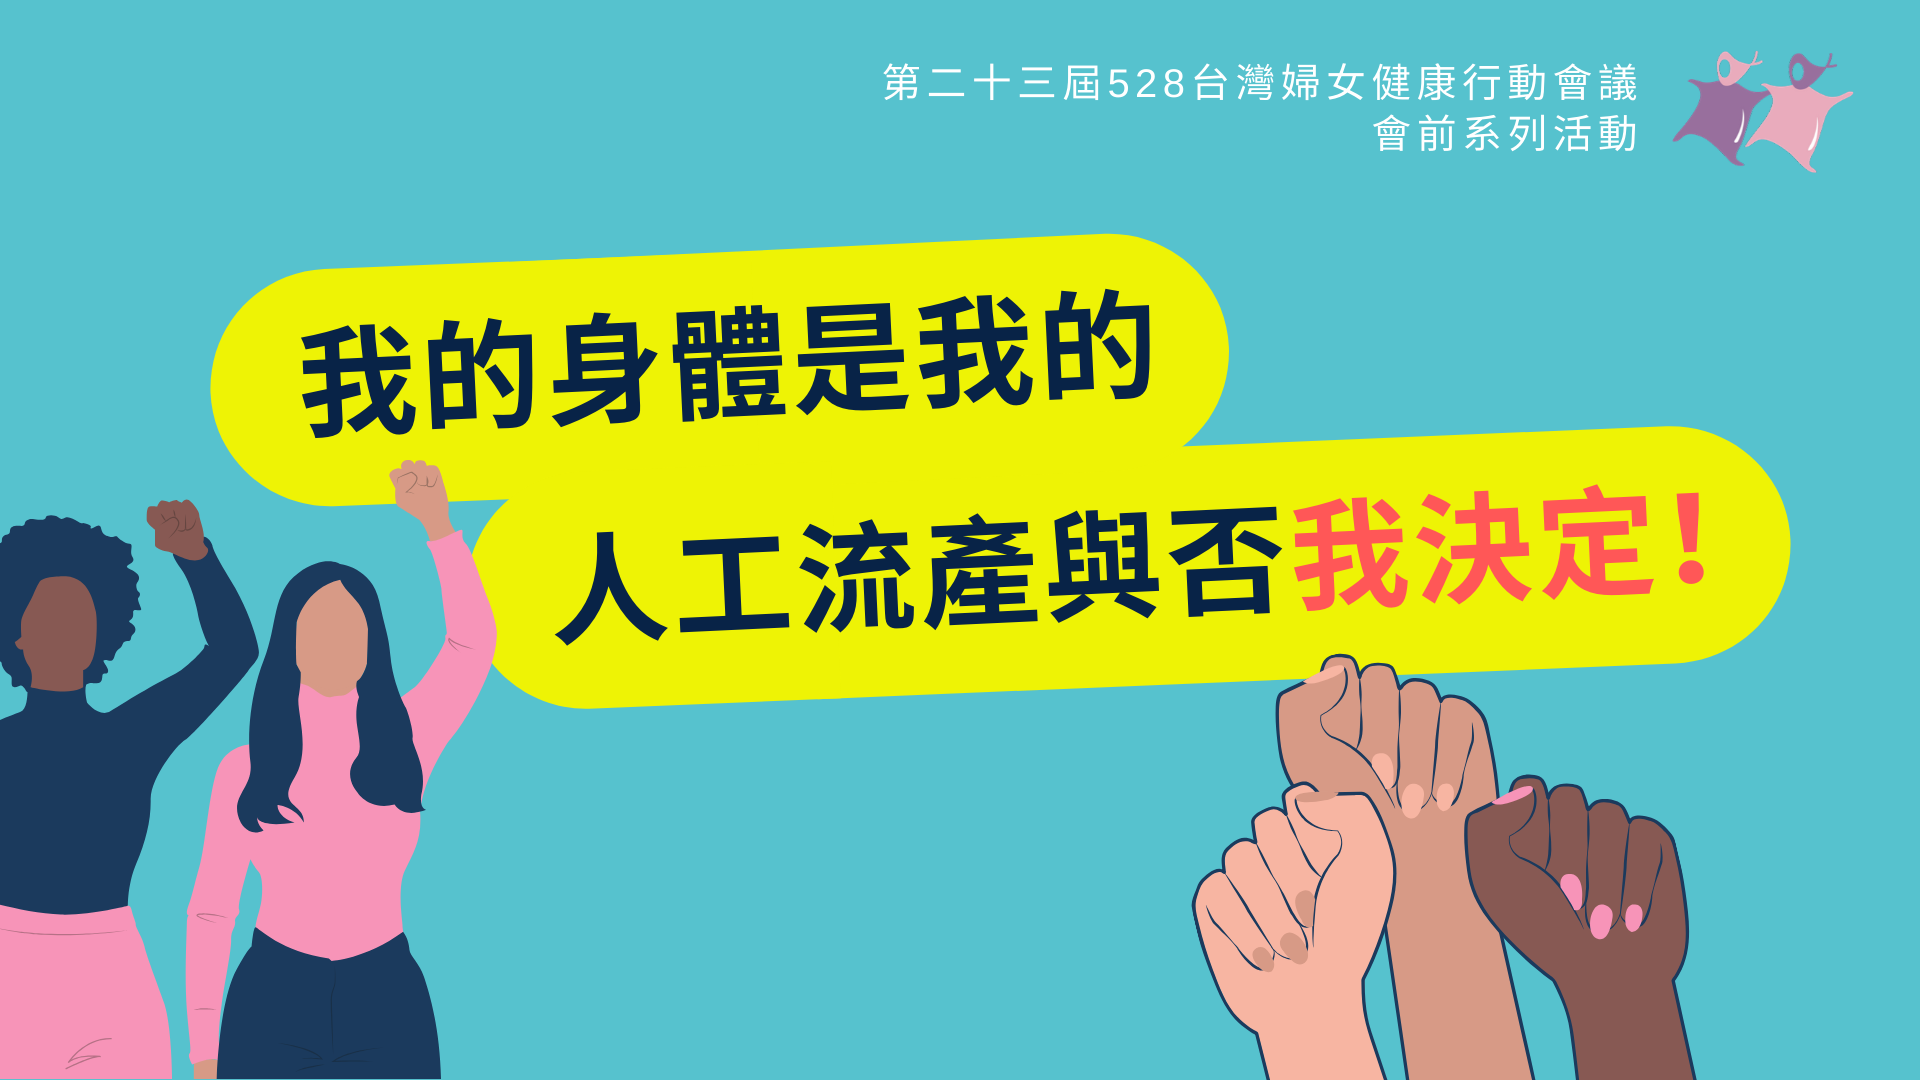 第23屆528台灣婦女健康行動會議會前系列活動